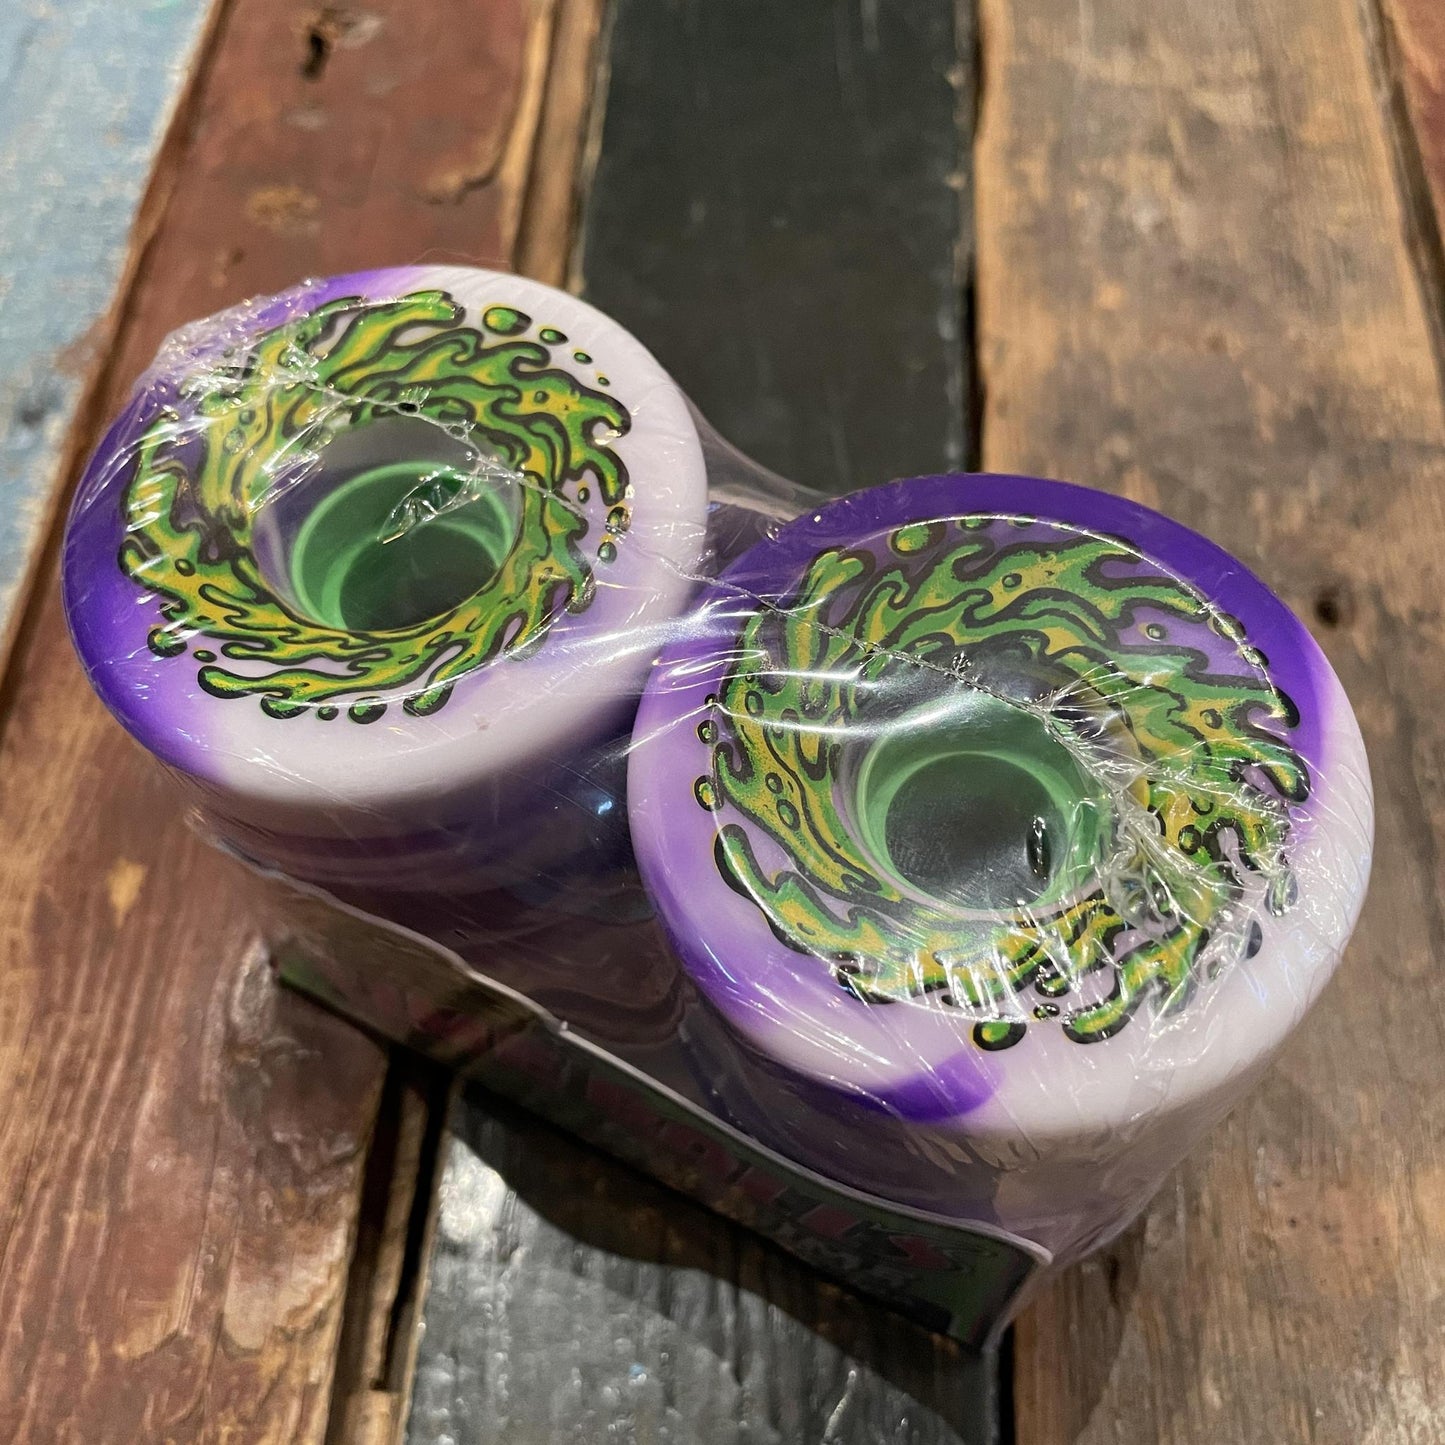 66mm OG Slime Purple White Swirl 78a Slime Balls Wheels